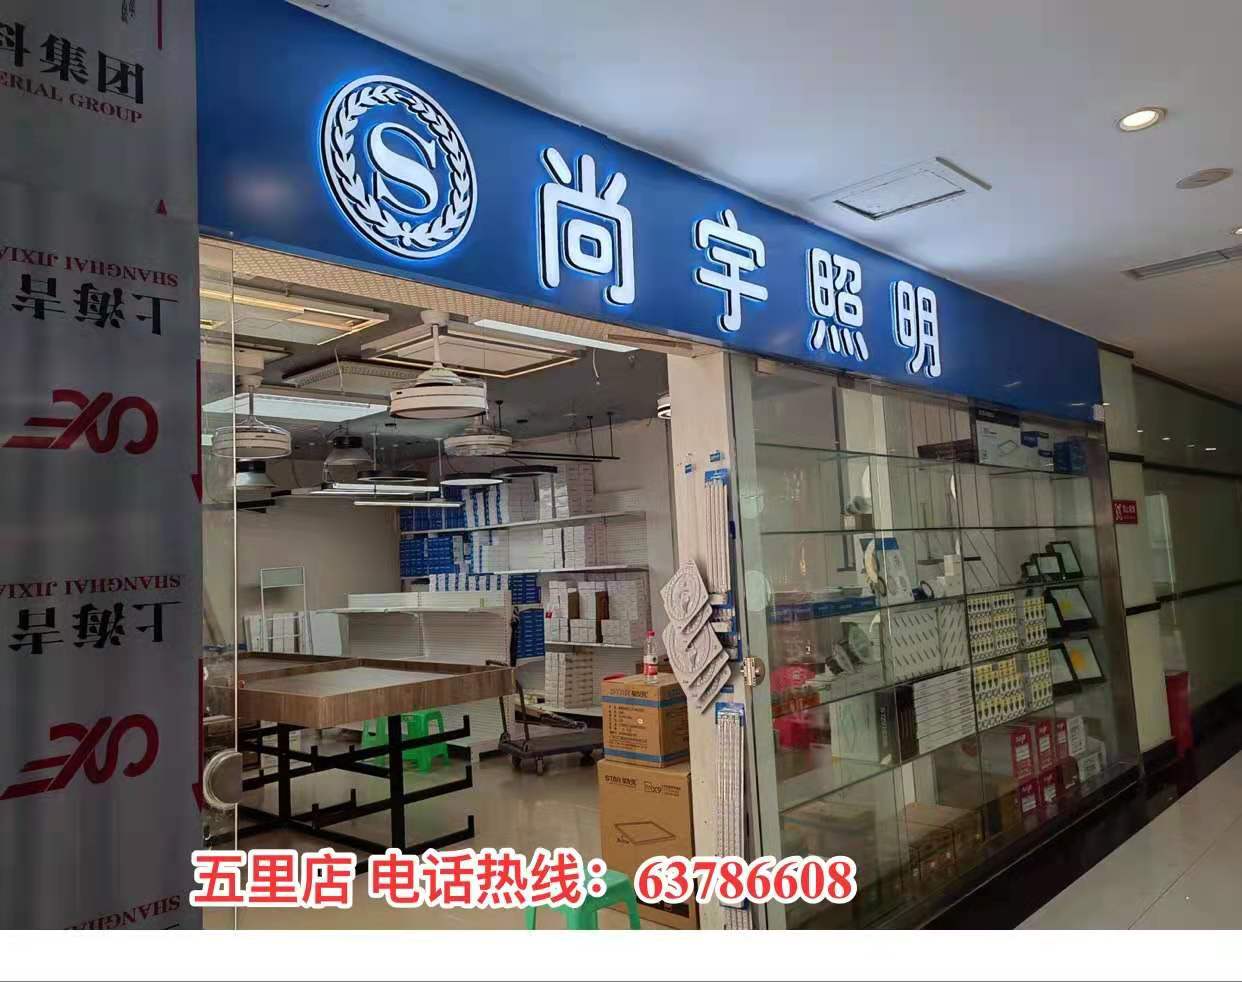 重庆尚宇照明电器有限公司 环境照片活动图片